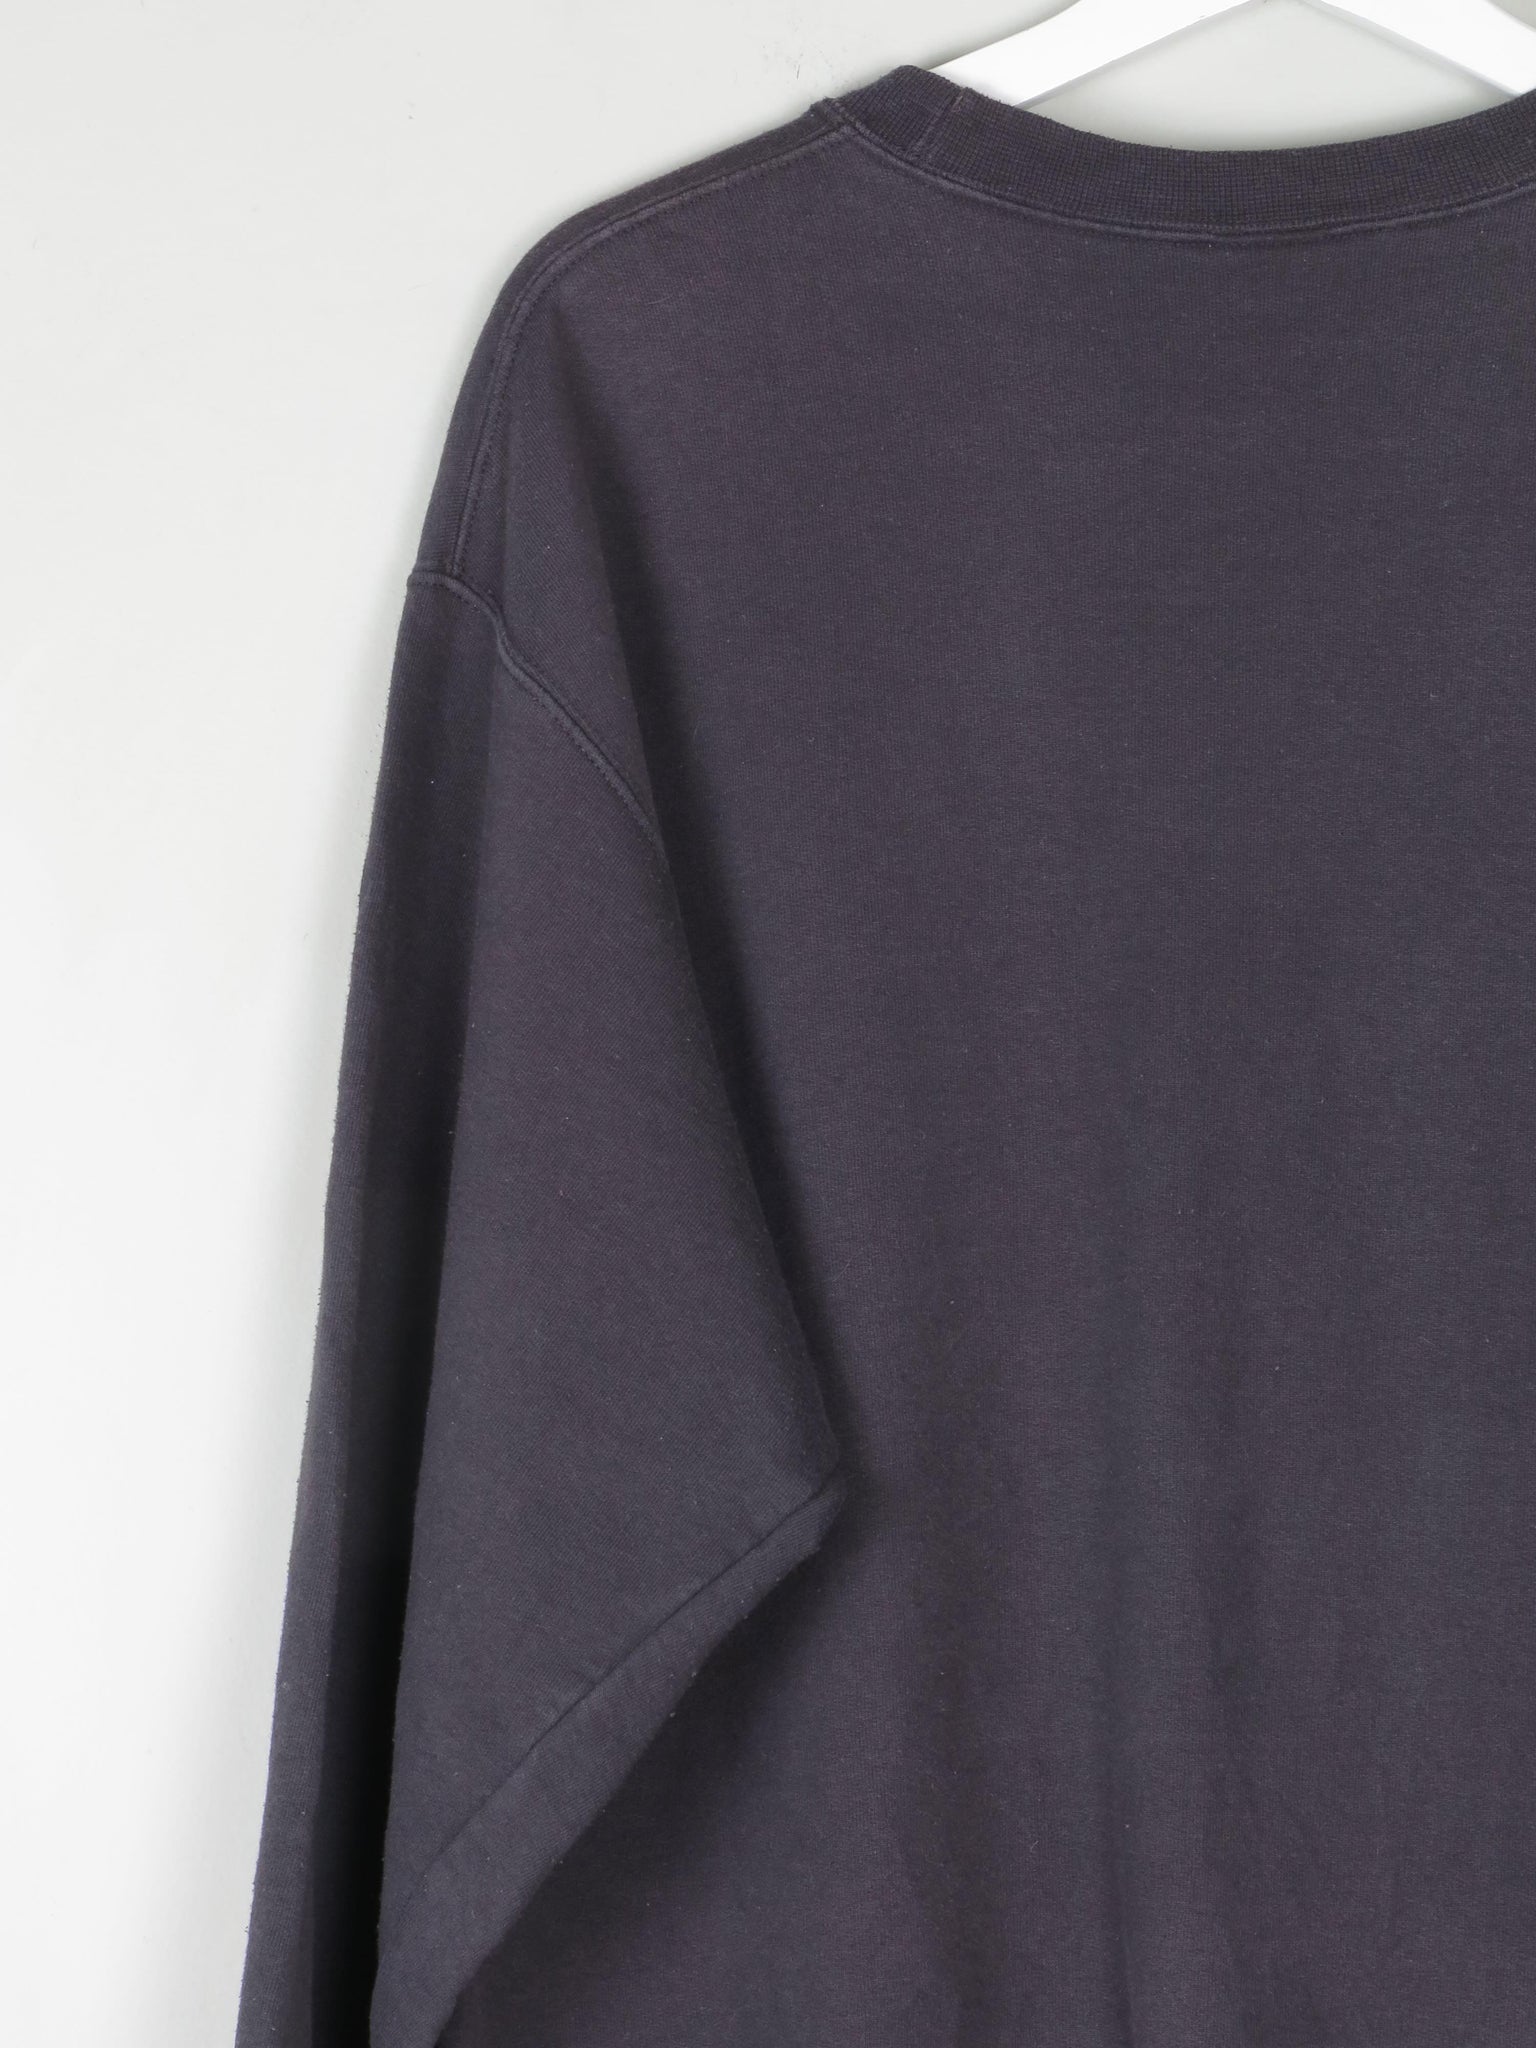 Men's Black Vintage Sweatshirt With Logo L - The Harlequin